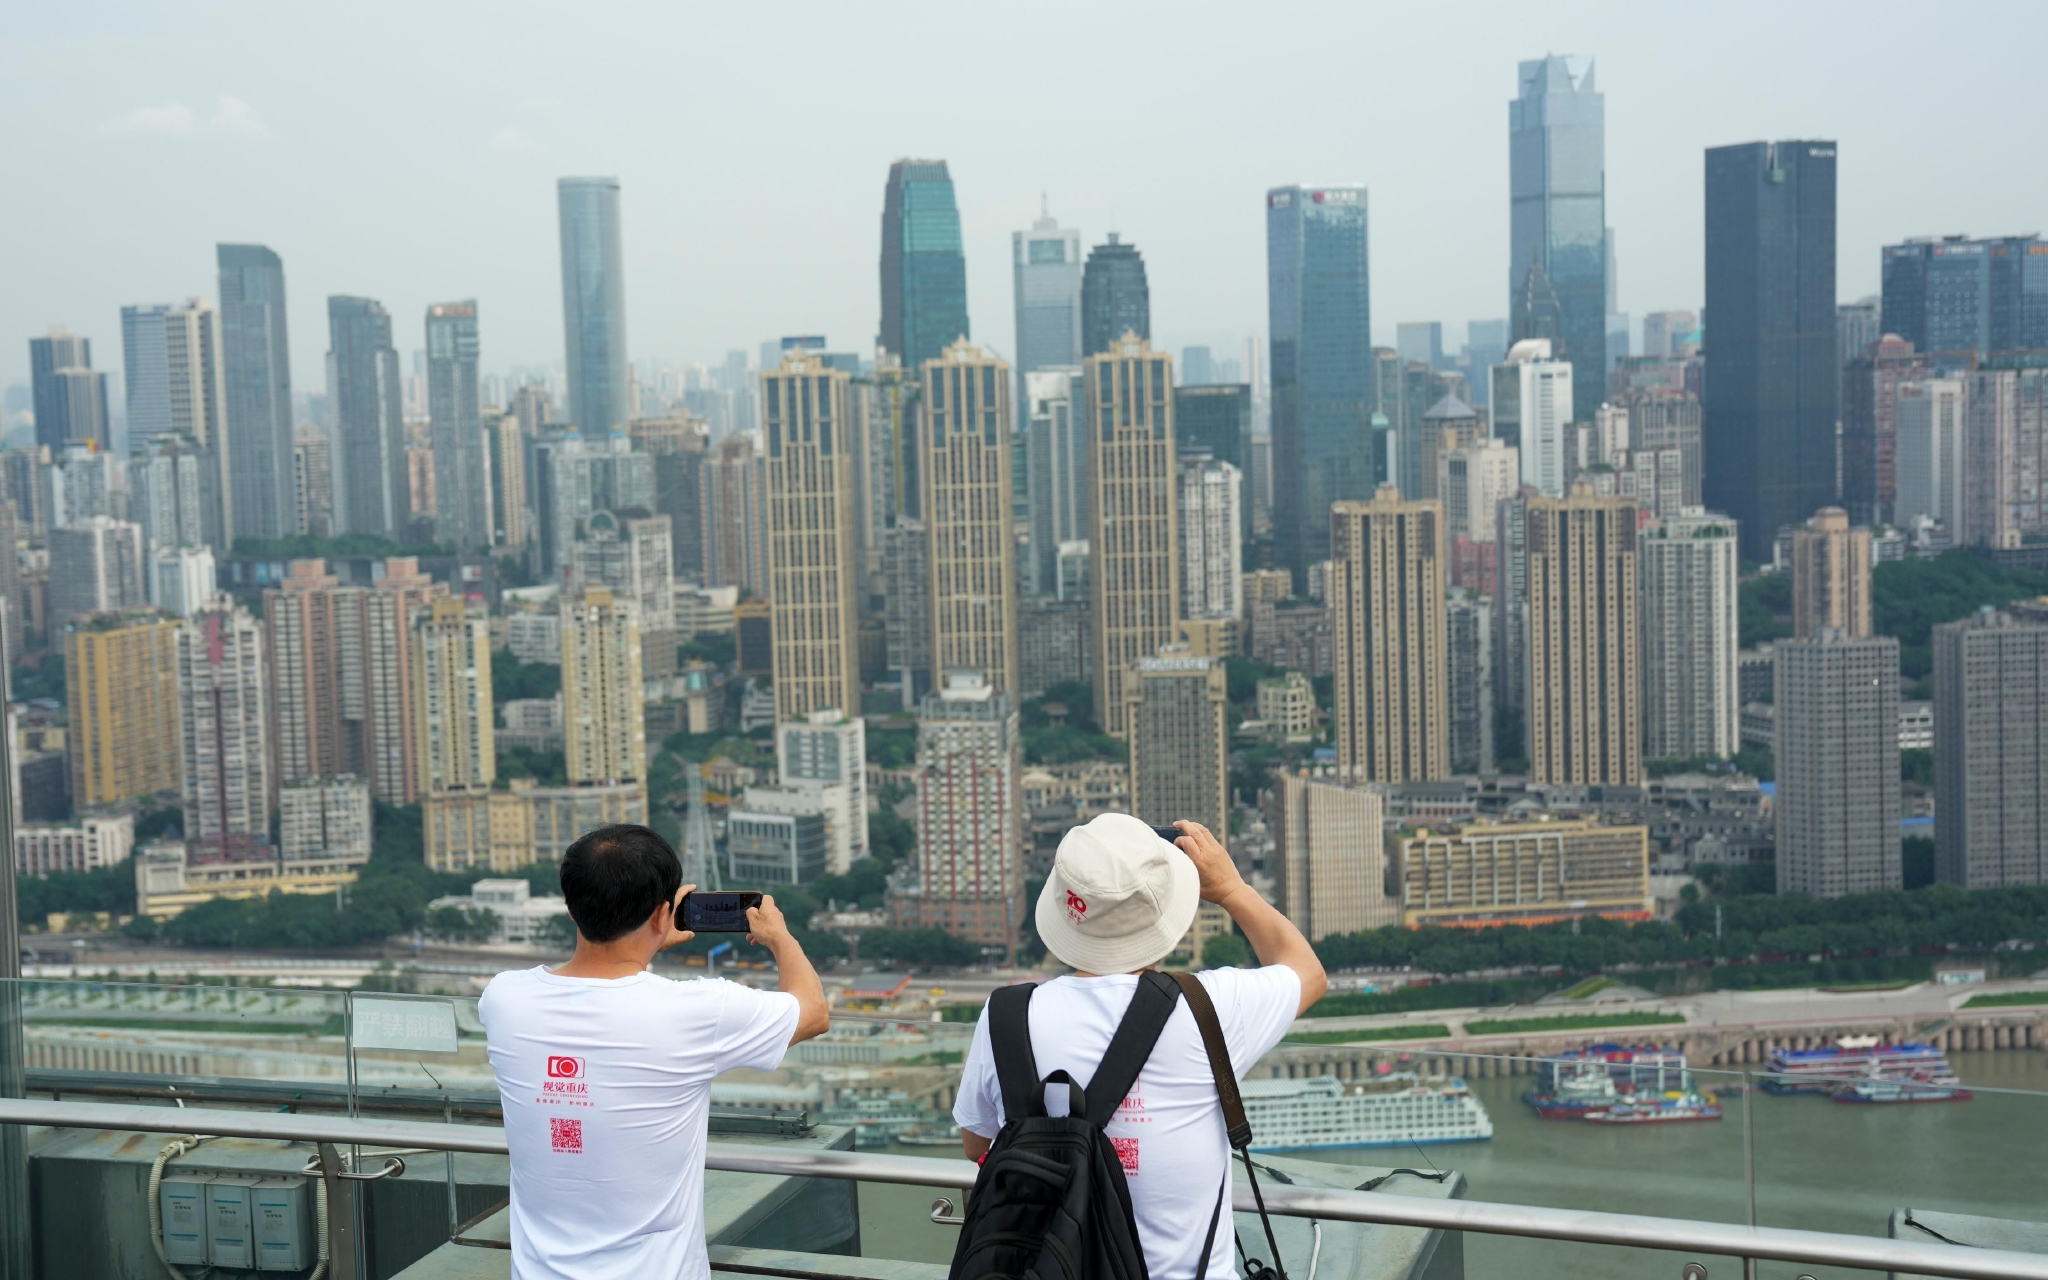 ▲市民在一栋高楼顶上拍摄城市景象。图/新华社